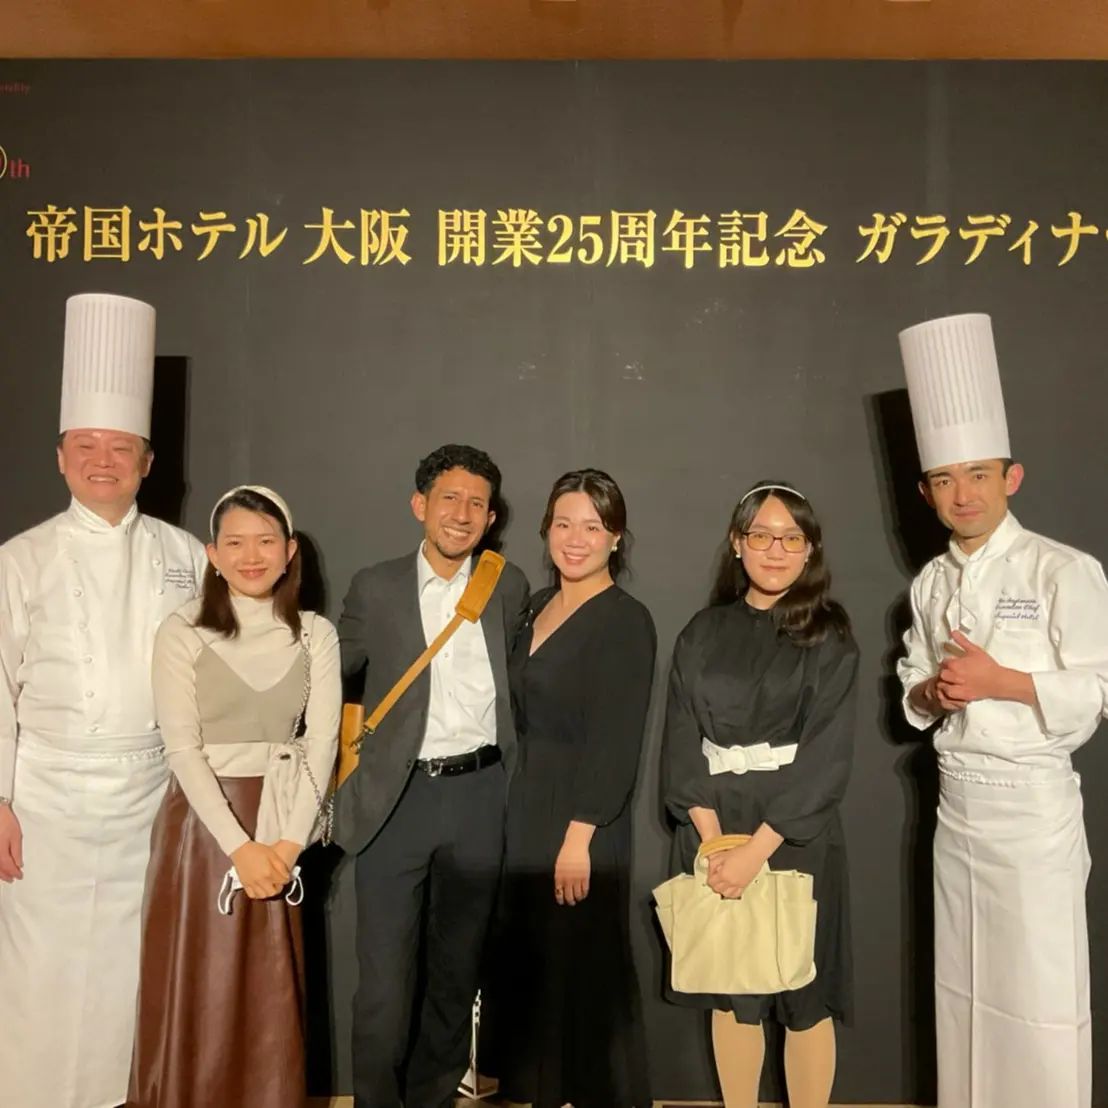 留学生らが帝国ホテル 大阪のガラディナーに参加しました！